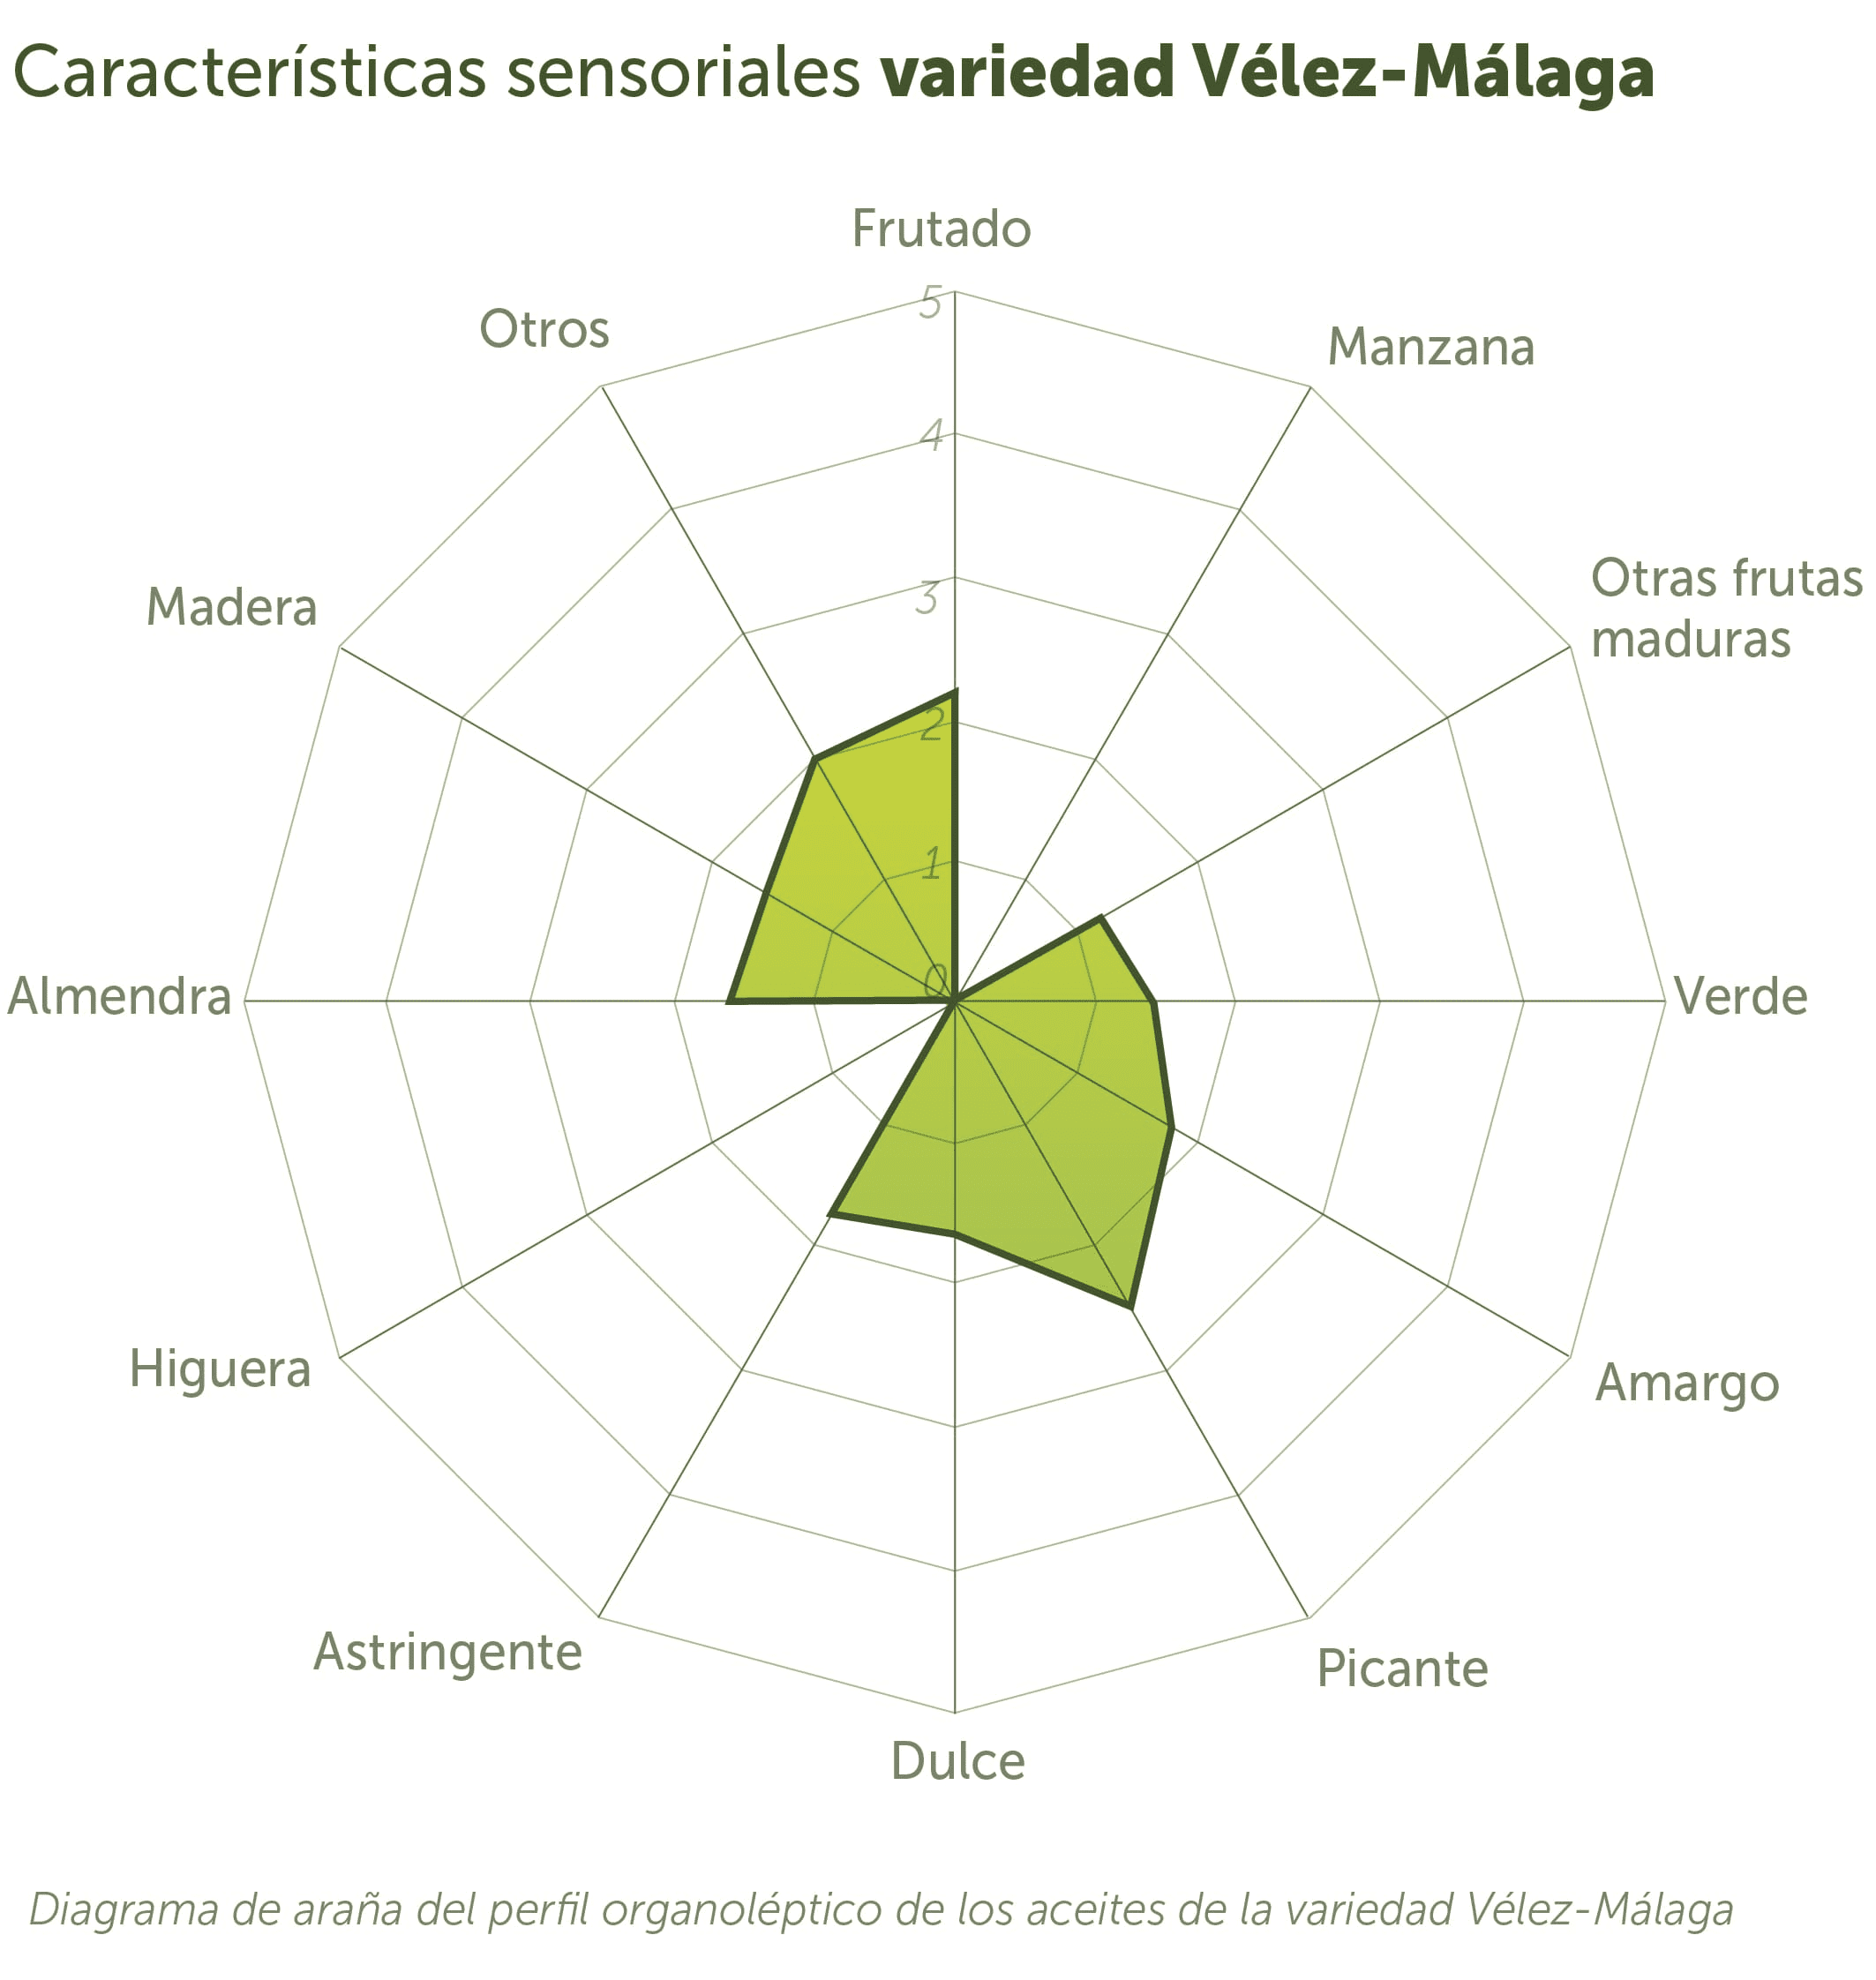 Verdial de Velez-Malaga